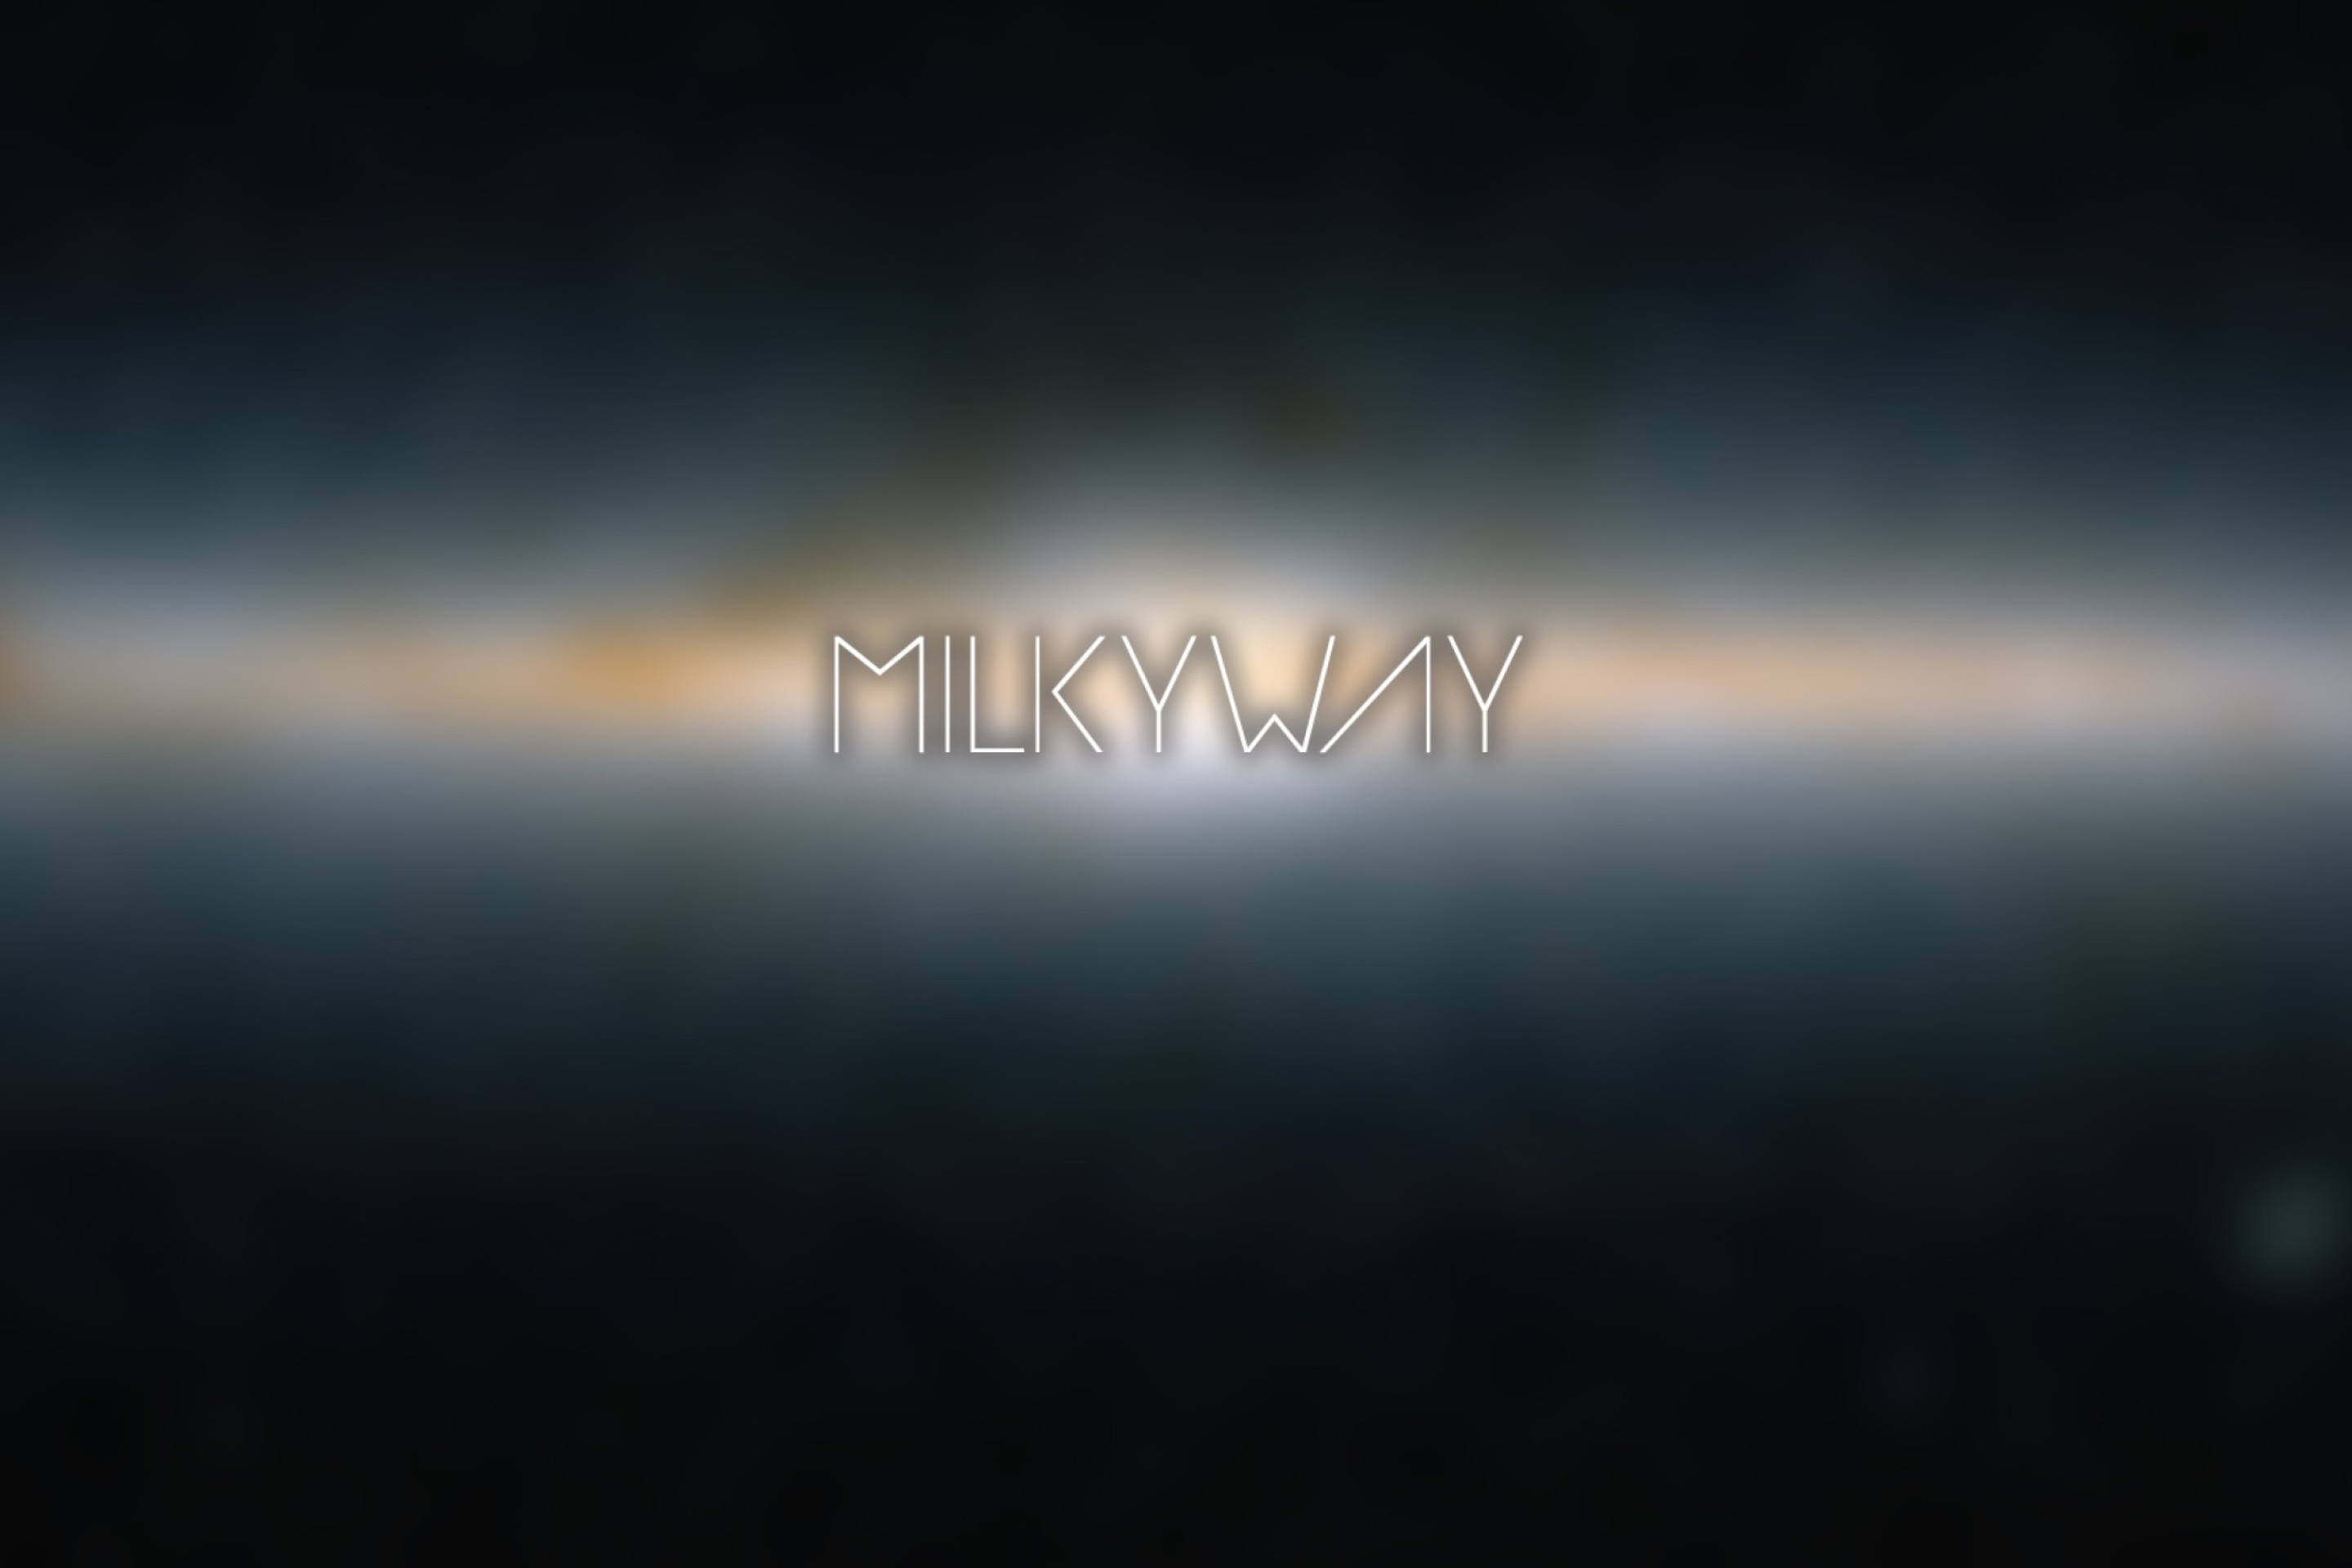 Milky Way wallpaper 2880x1920